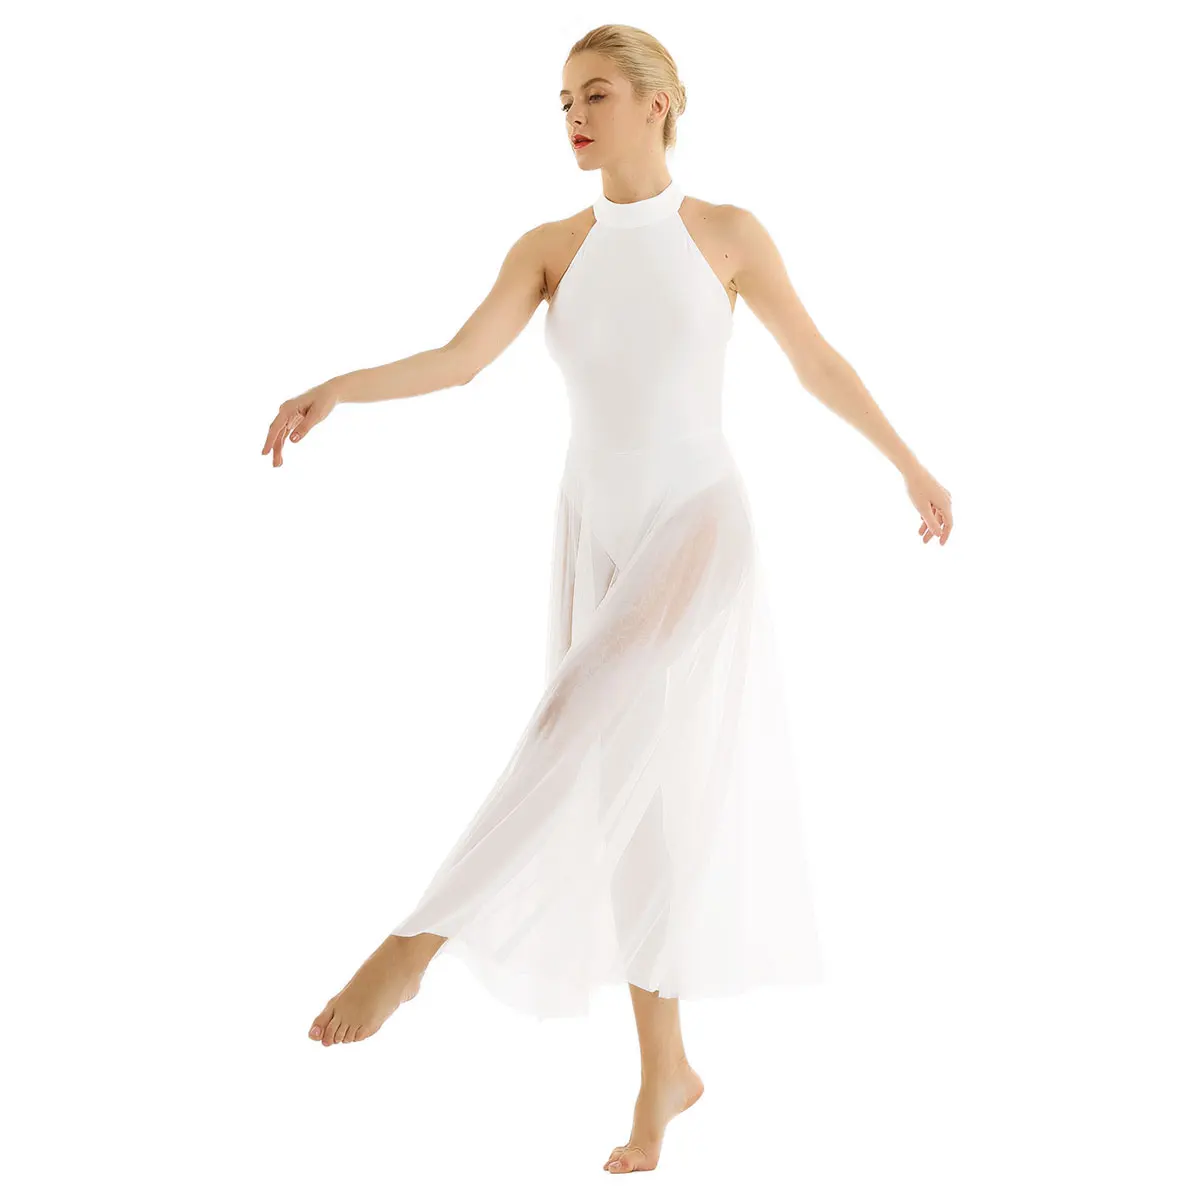 Женское взрослое балетное платье, современное лирическое платье, балетное трико для женщин, современный трико с шеей, балетное трико с сетчатой юбкой